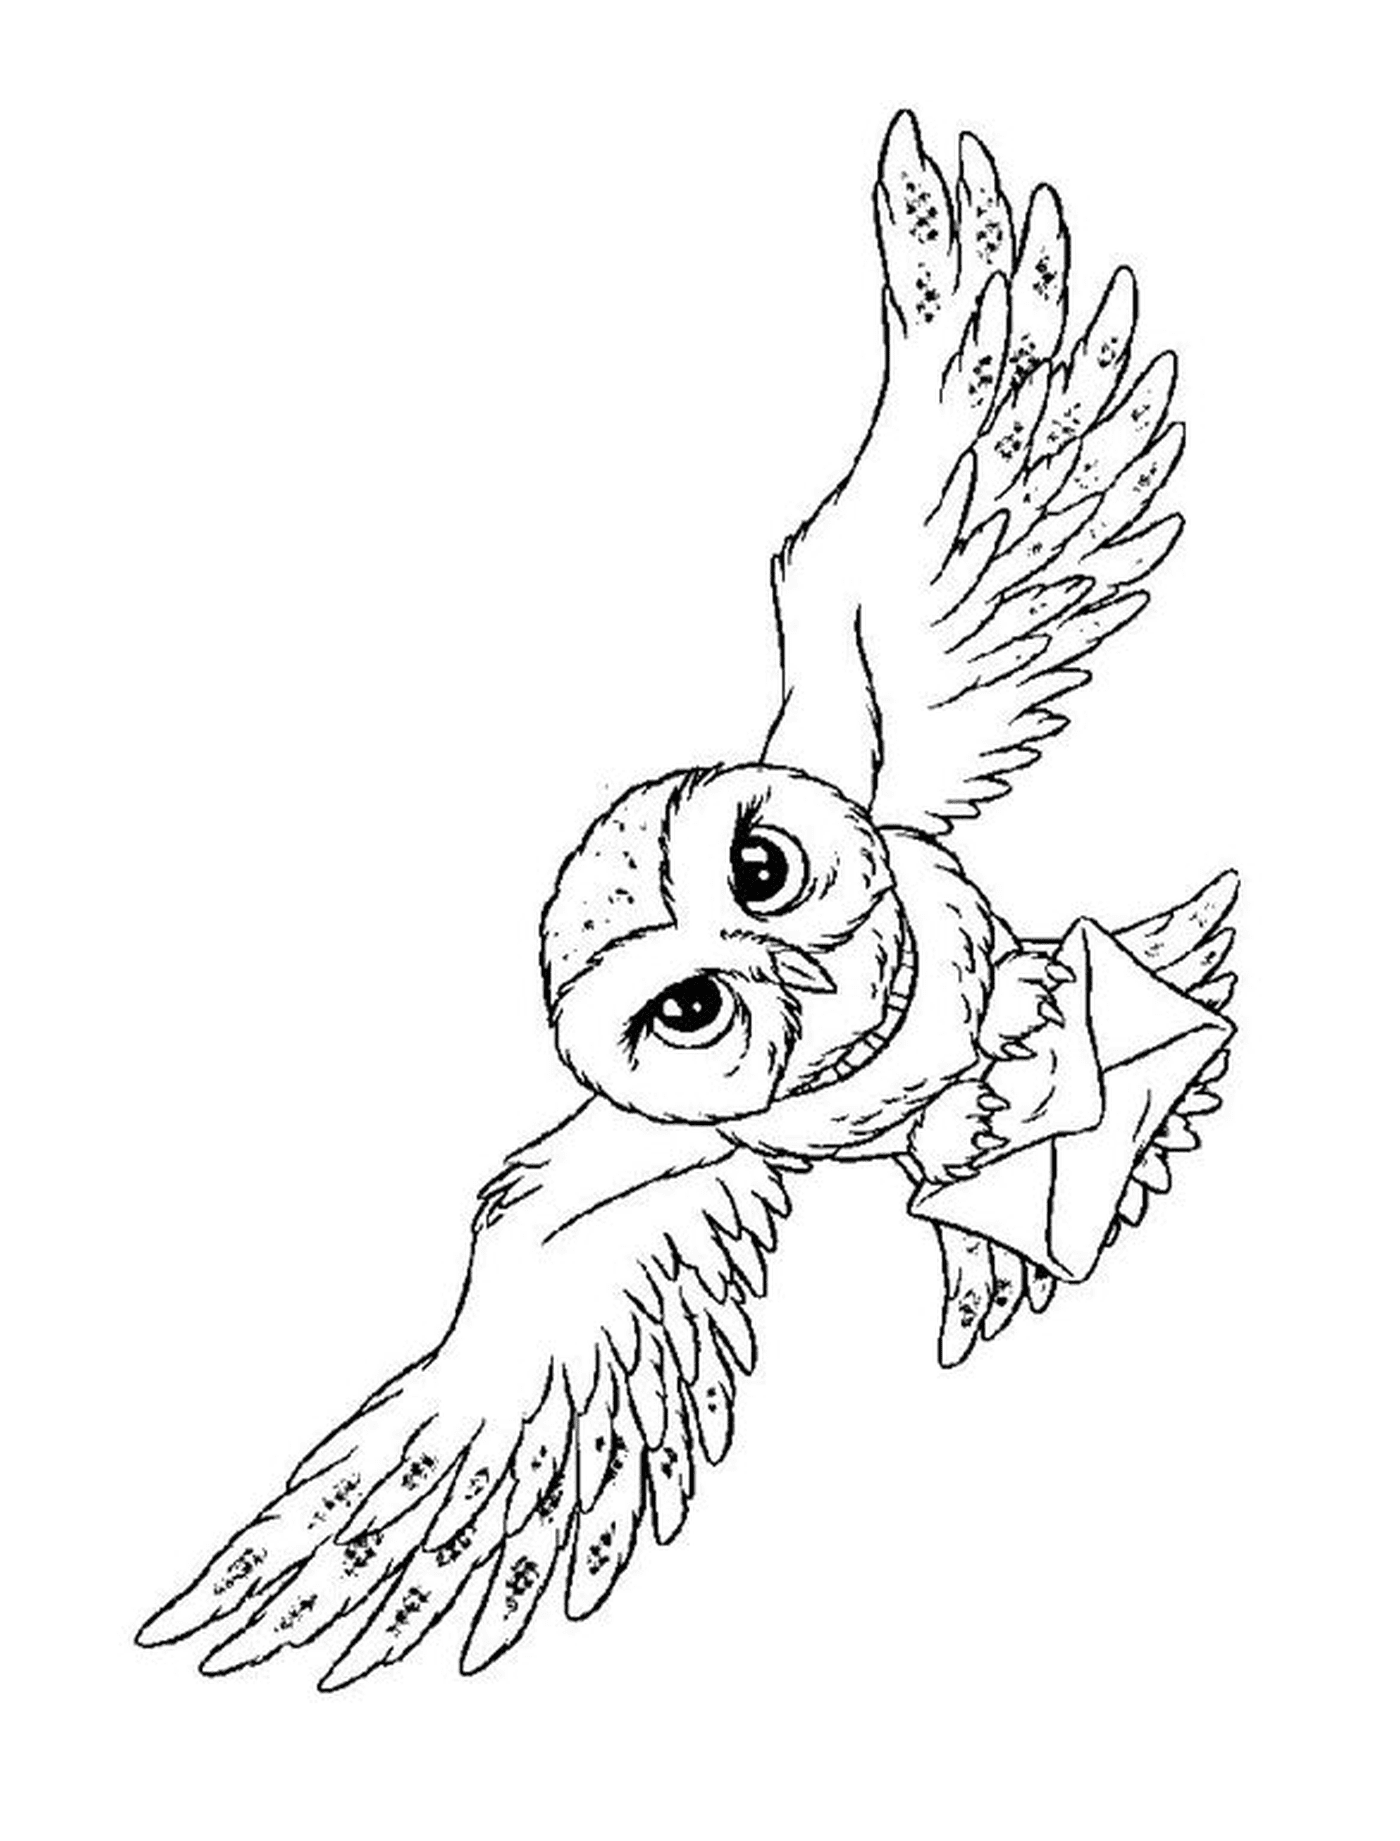  Hedwige in flight 